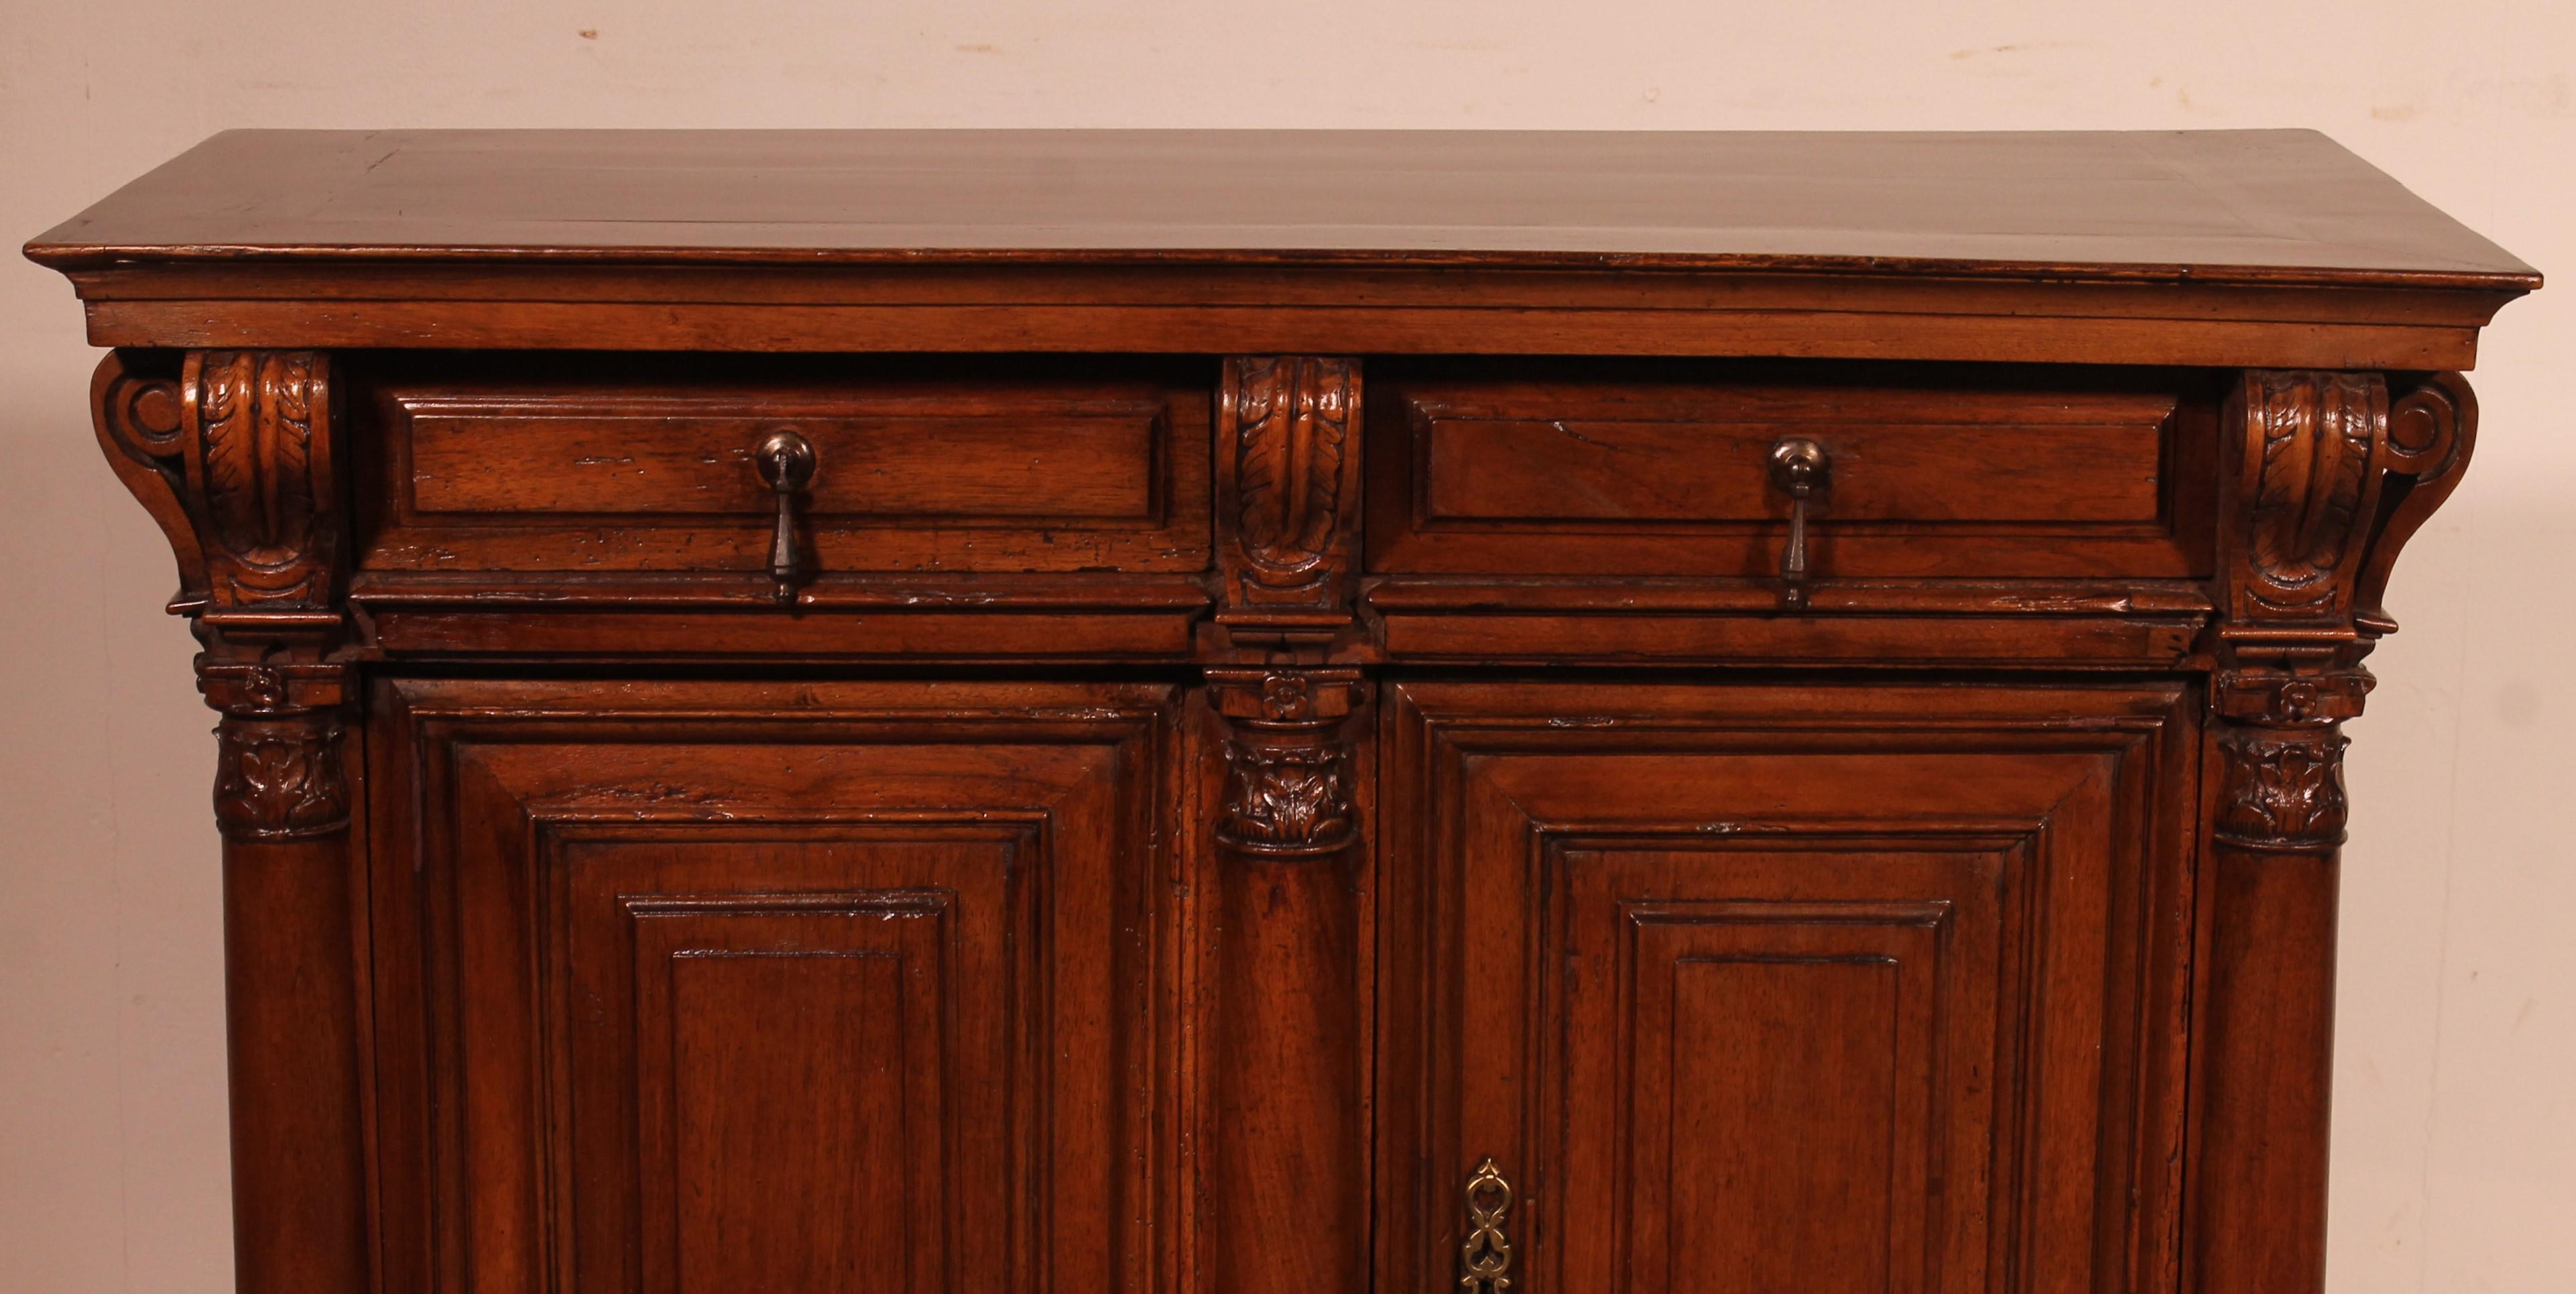 schönes kleines Buffet oder Schrank mit 2 Türen und zwei Schubladen in Nussbaum aus dem 17. Jahrhundert Wahrscheinlich ein Werk aus Burgund aus der französischen Renaissance

kleines ungewöhnliches Modell mit sehr schönen geformten Türen sowie